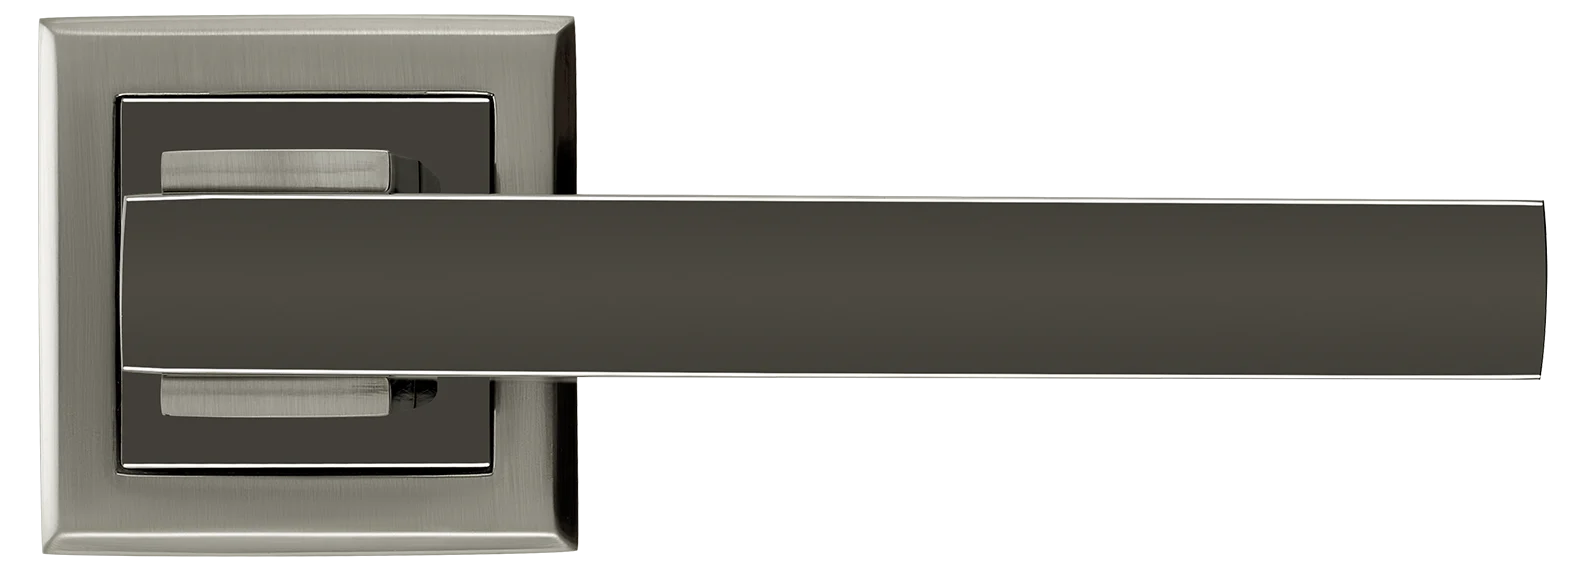 PIQUADRO, ручка дверная MH-37 SN/BN-S, на квадратной накладке, цвет - бел. никель/черн. никель фото купить в Москве